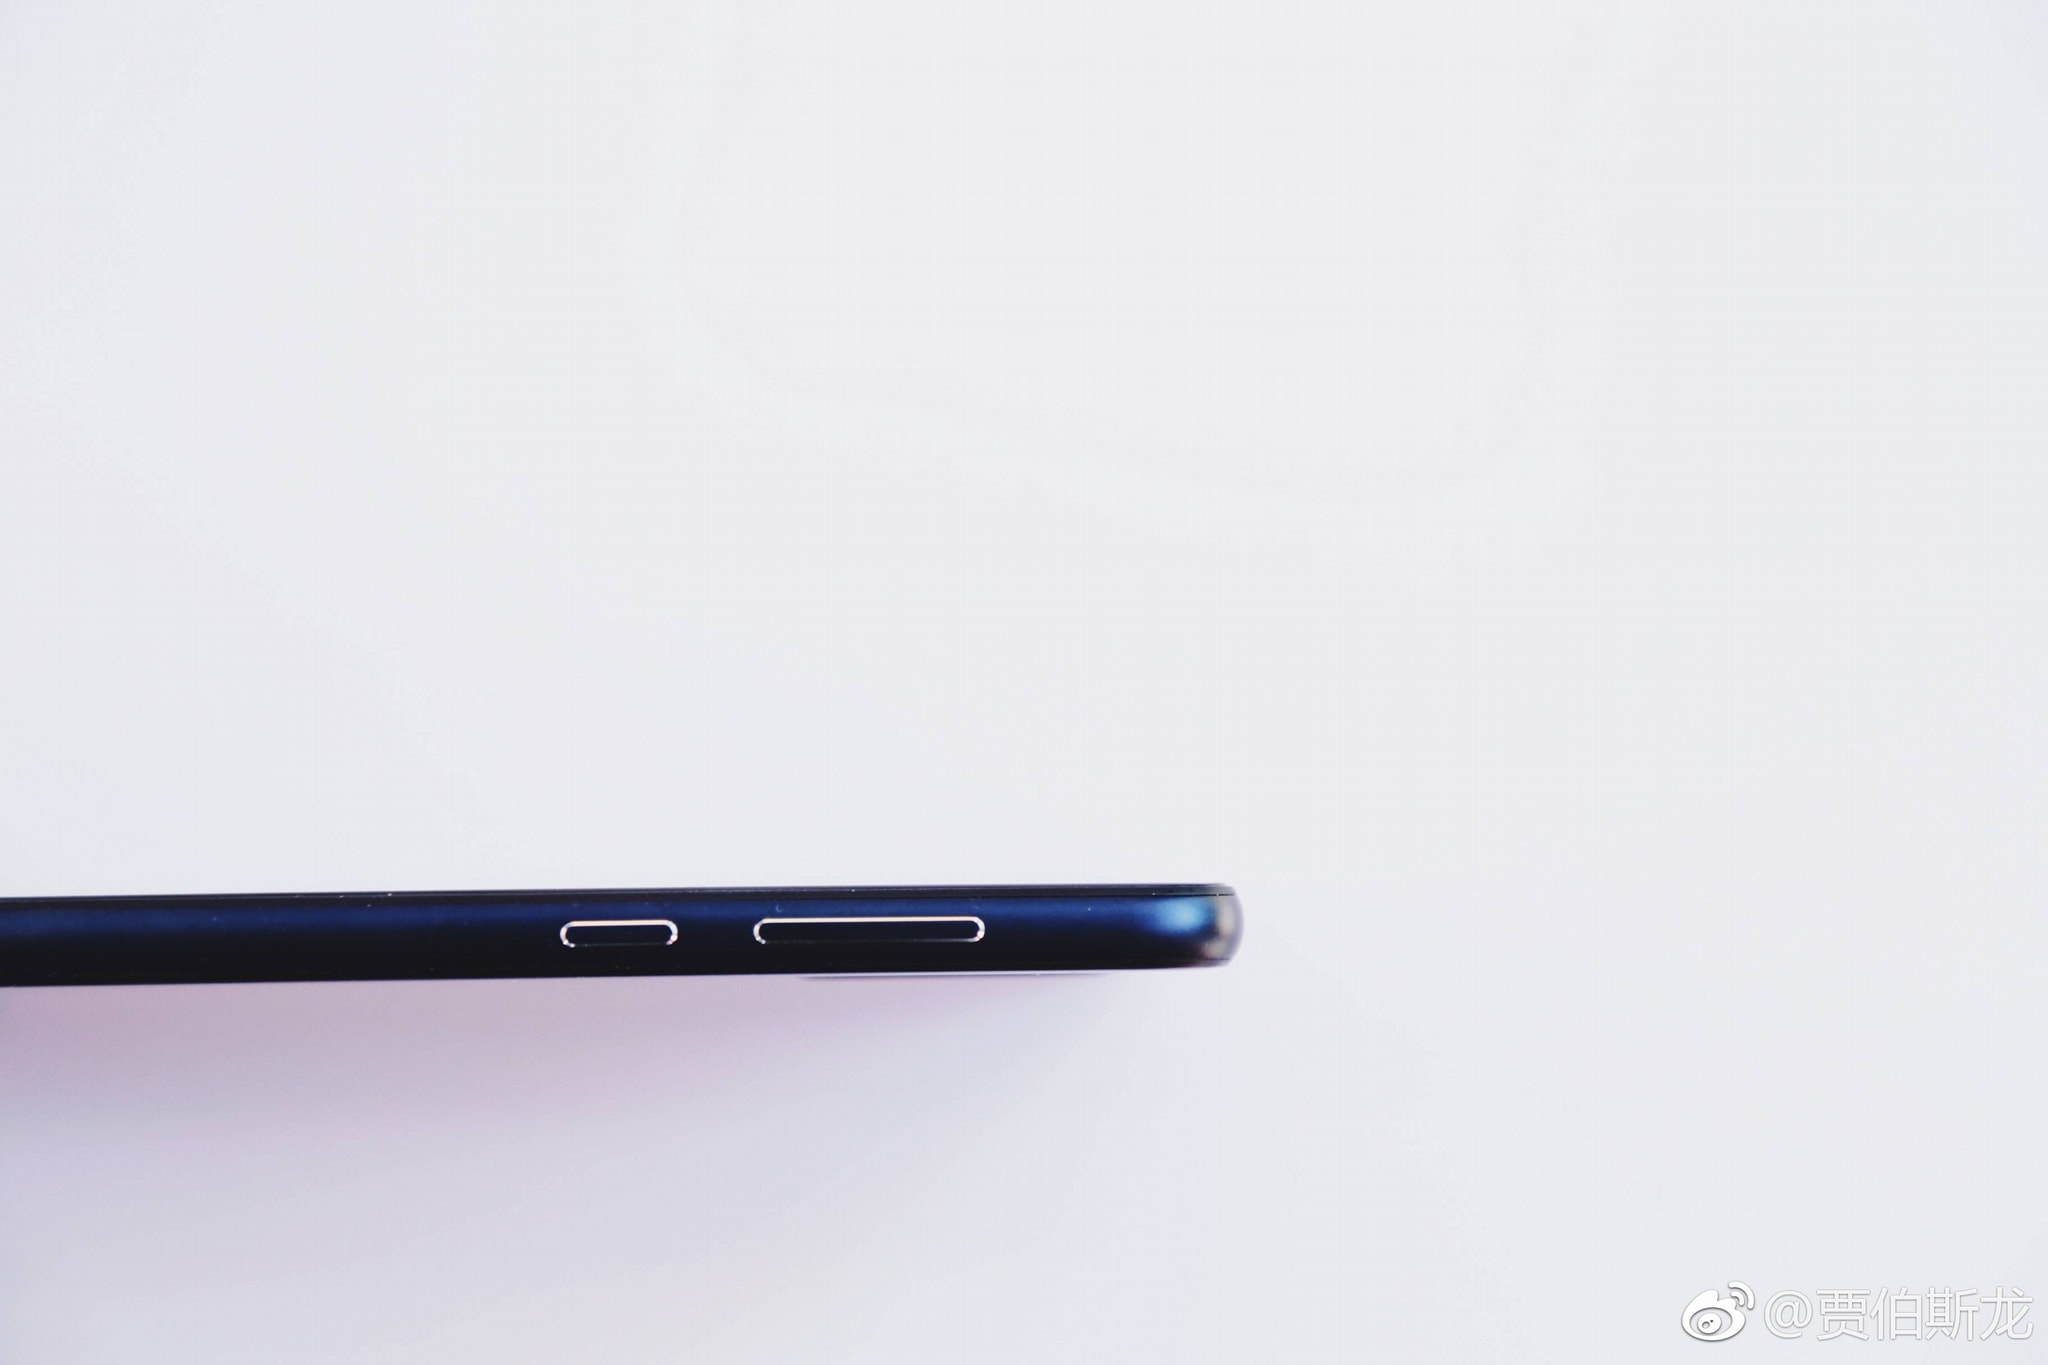 細看諾基亞首部劉海屏：送上更多全新 Nokia X 高清真機美圖賞；5月16日正式發布！ 5